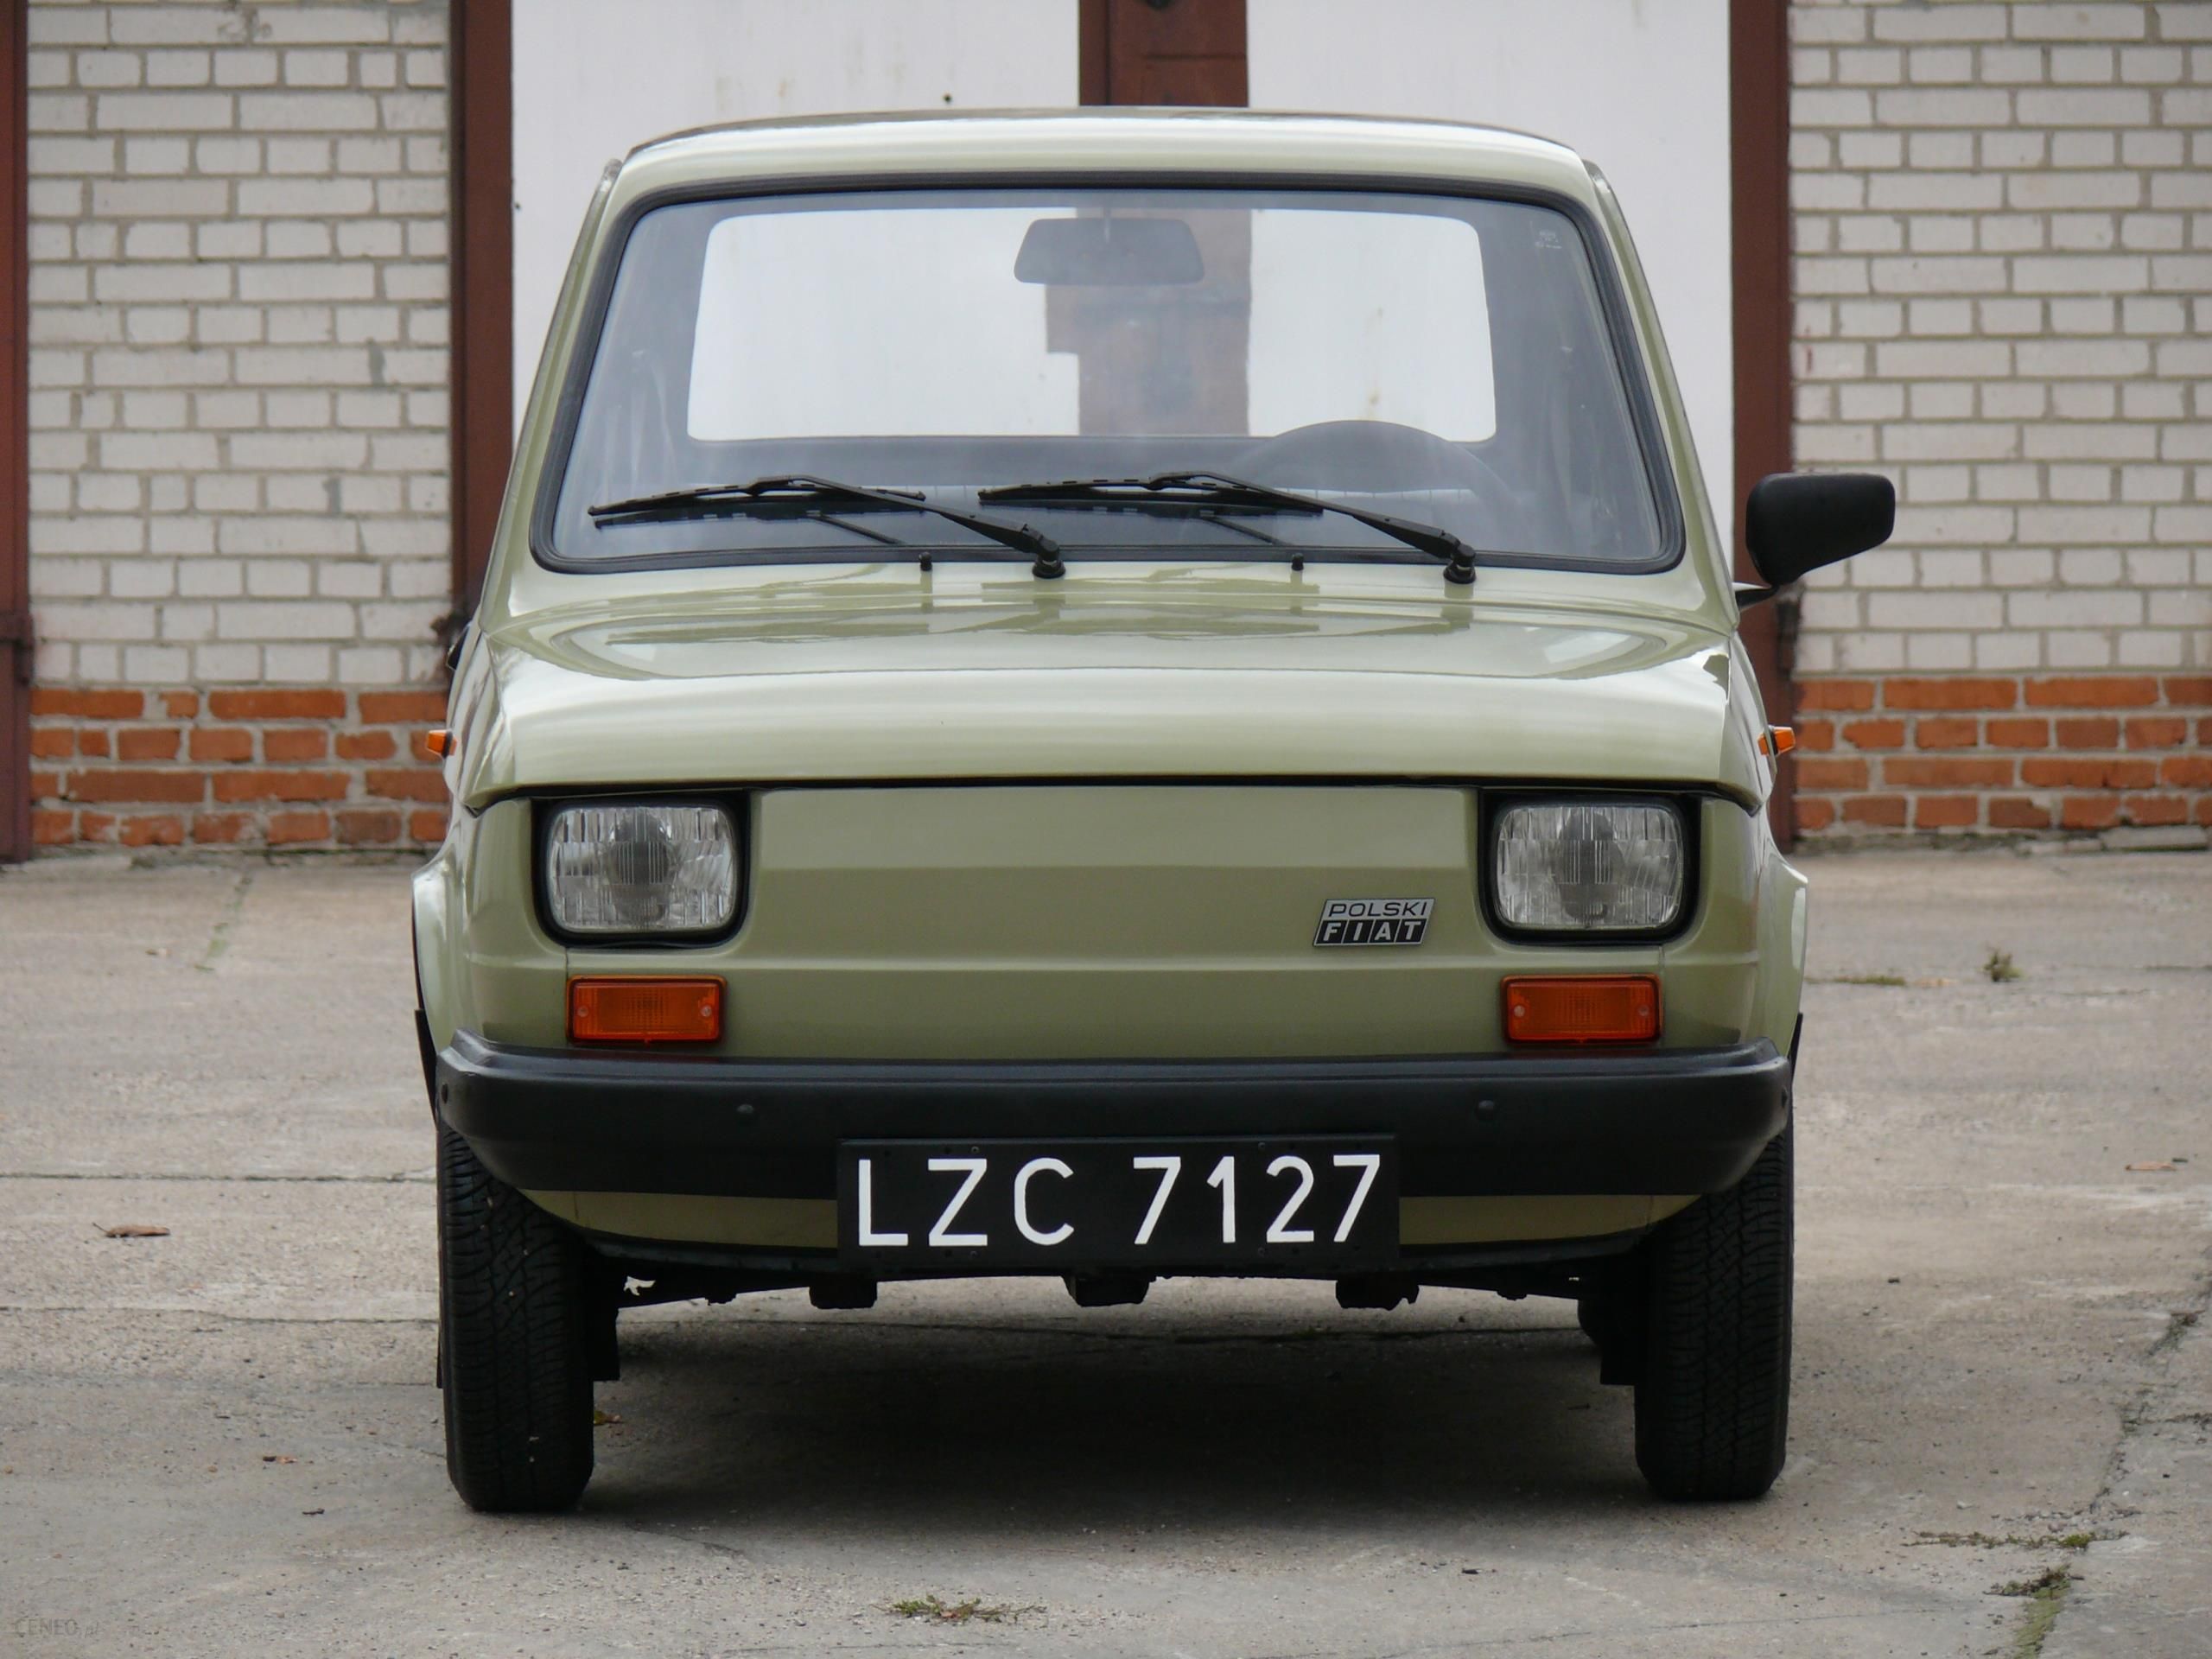 Polski Fiat 126p 1986 rok ładna oliwka Opinie i ceny